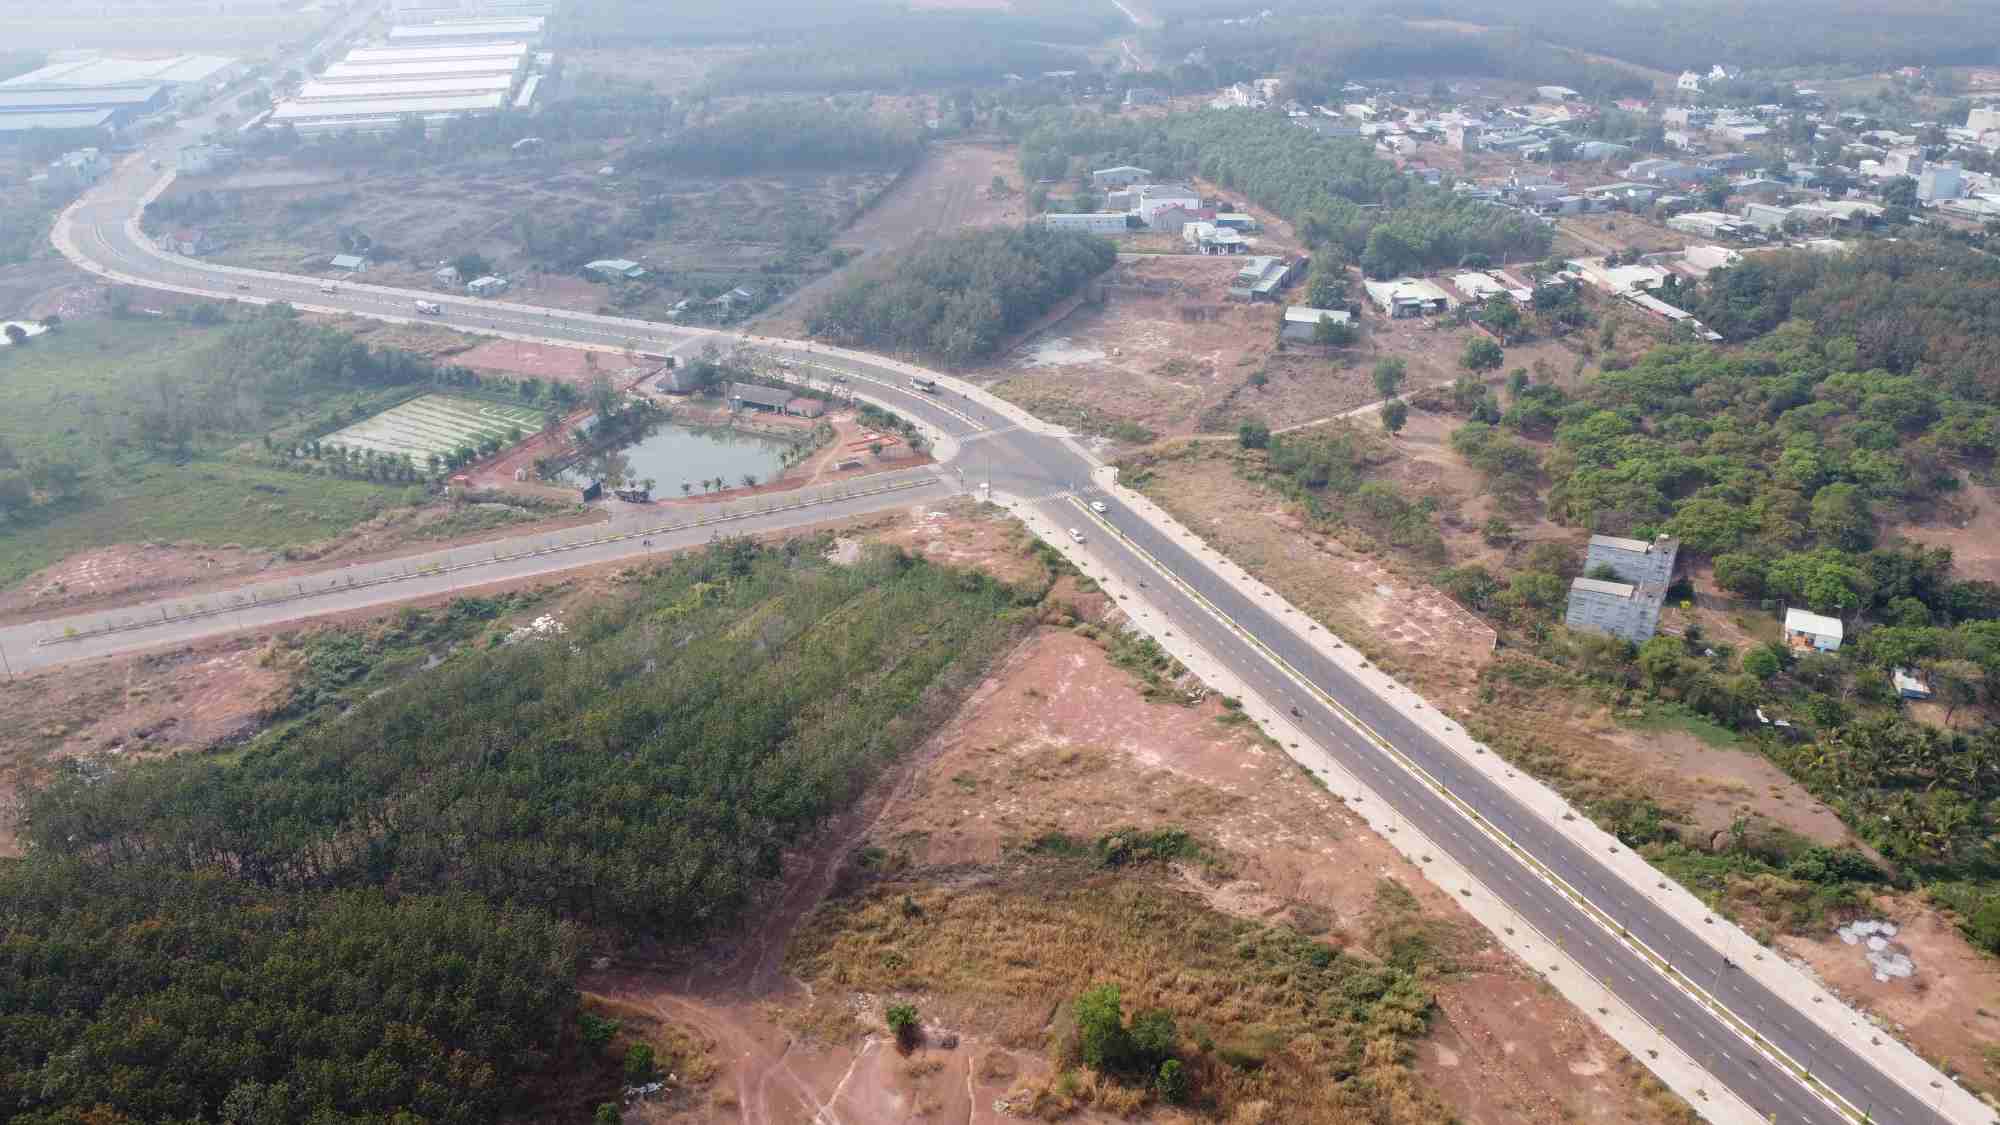 Đường Phan Bội Châu kết nối thành phố Đồng Xoài với Khu công nghiệp Đồng Xoài III, tỉnh Bình Phước, được đưa vào sử dụng gần 1 năm nay. Ảnh: Đình Trọng